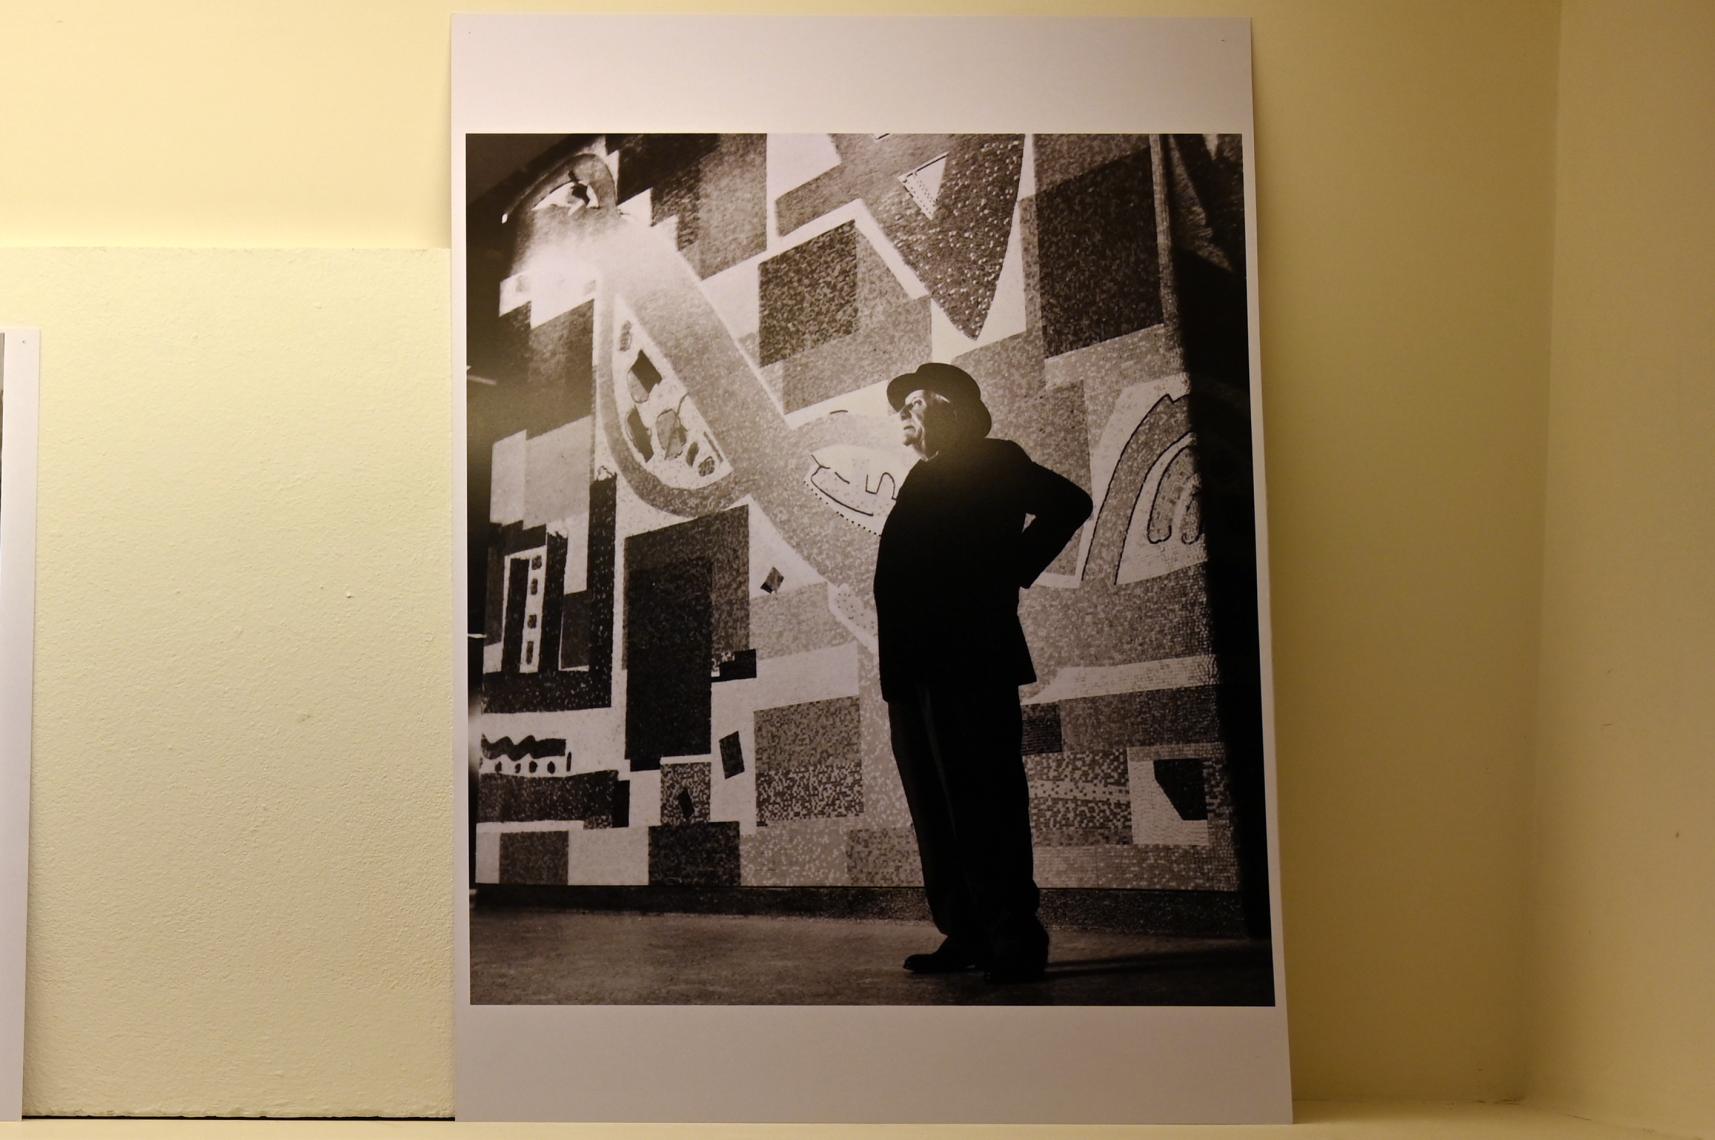 Hans Hofmann vor dem Wandmosaik für die Eingangshalle des William Kaufman Building, New York, Neumarkt in der Oberpfalz, Museum Lothar Fischer, Ausstellung "Hans Hofmann. Chimbote 1950 - Farben für die neue Stadt" vom 23.10.2022-29.01.2023, 1956